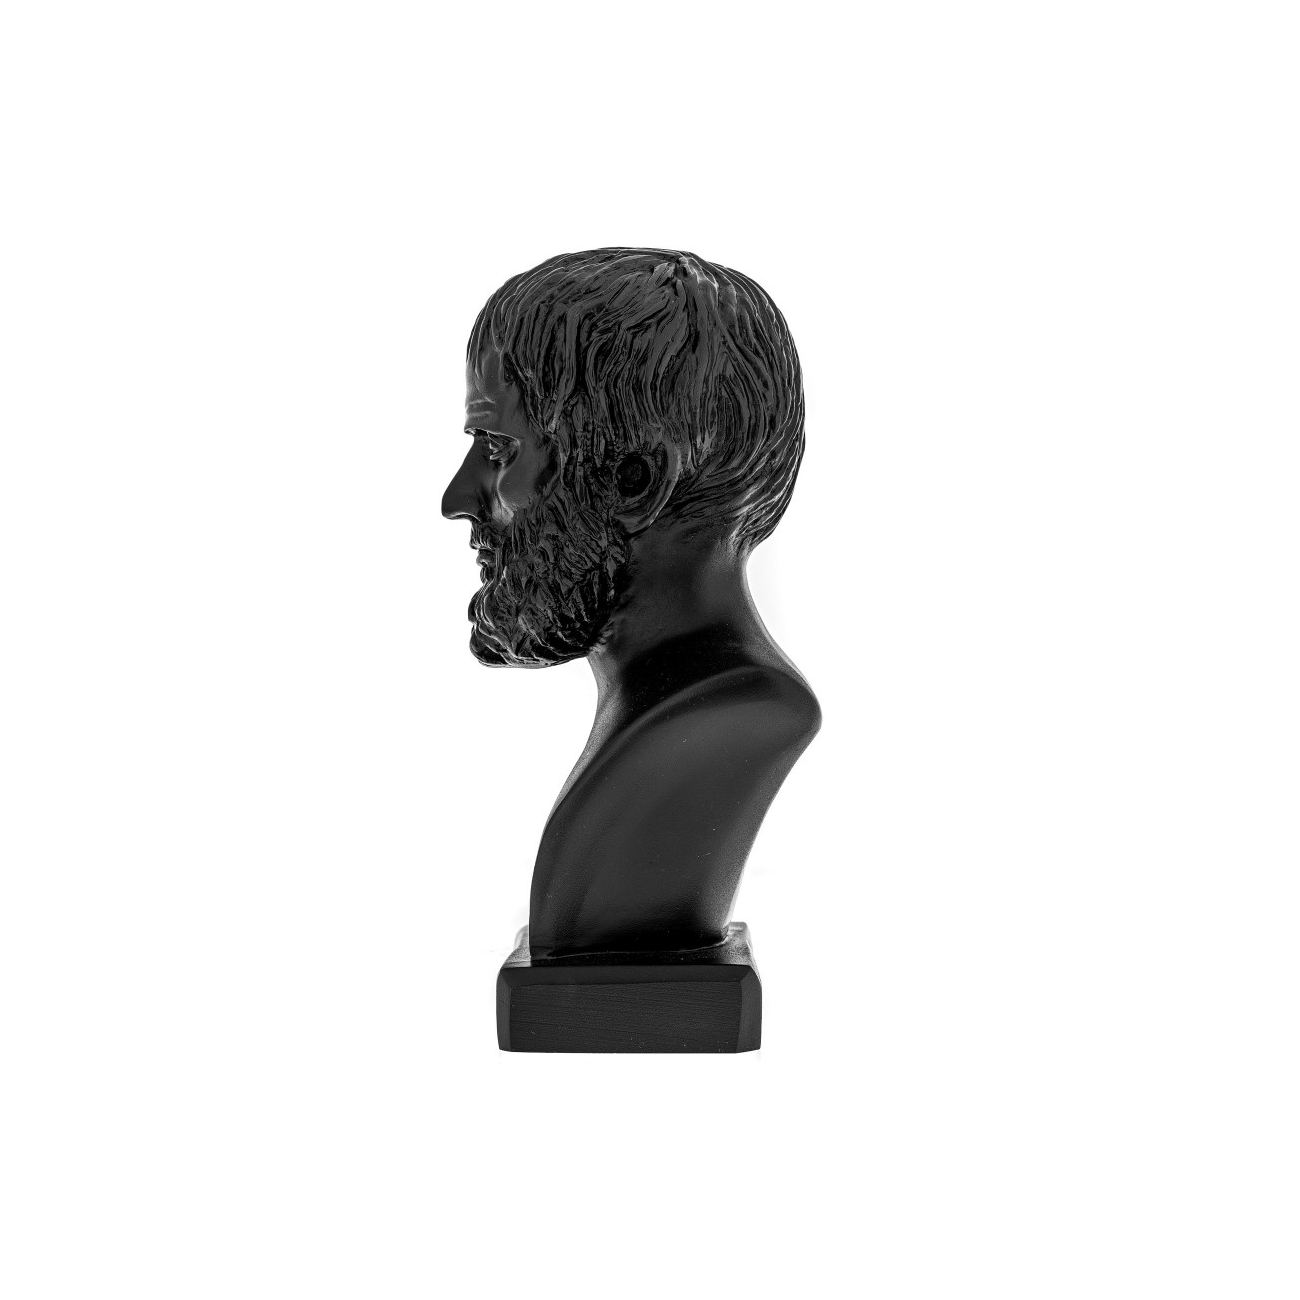 plato head statue